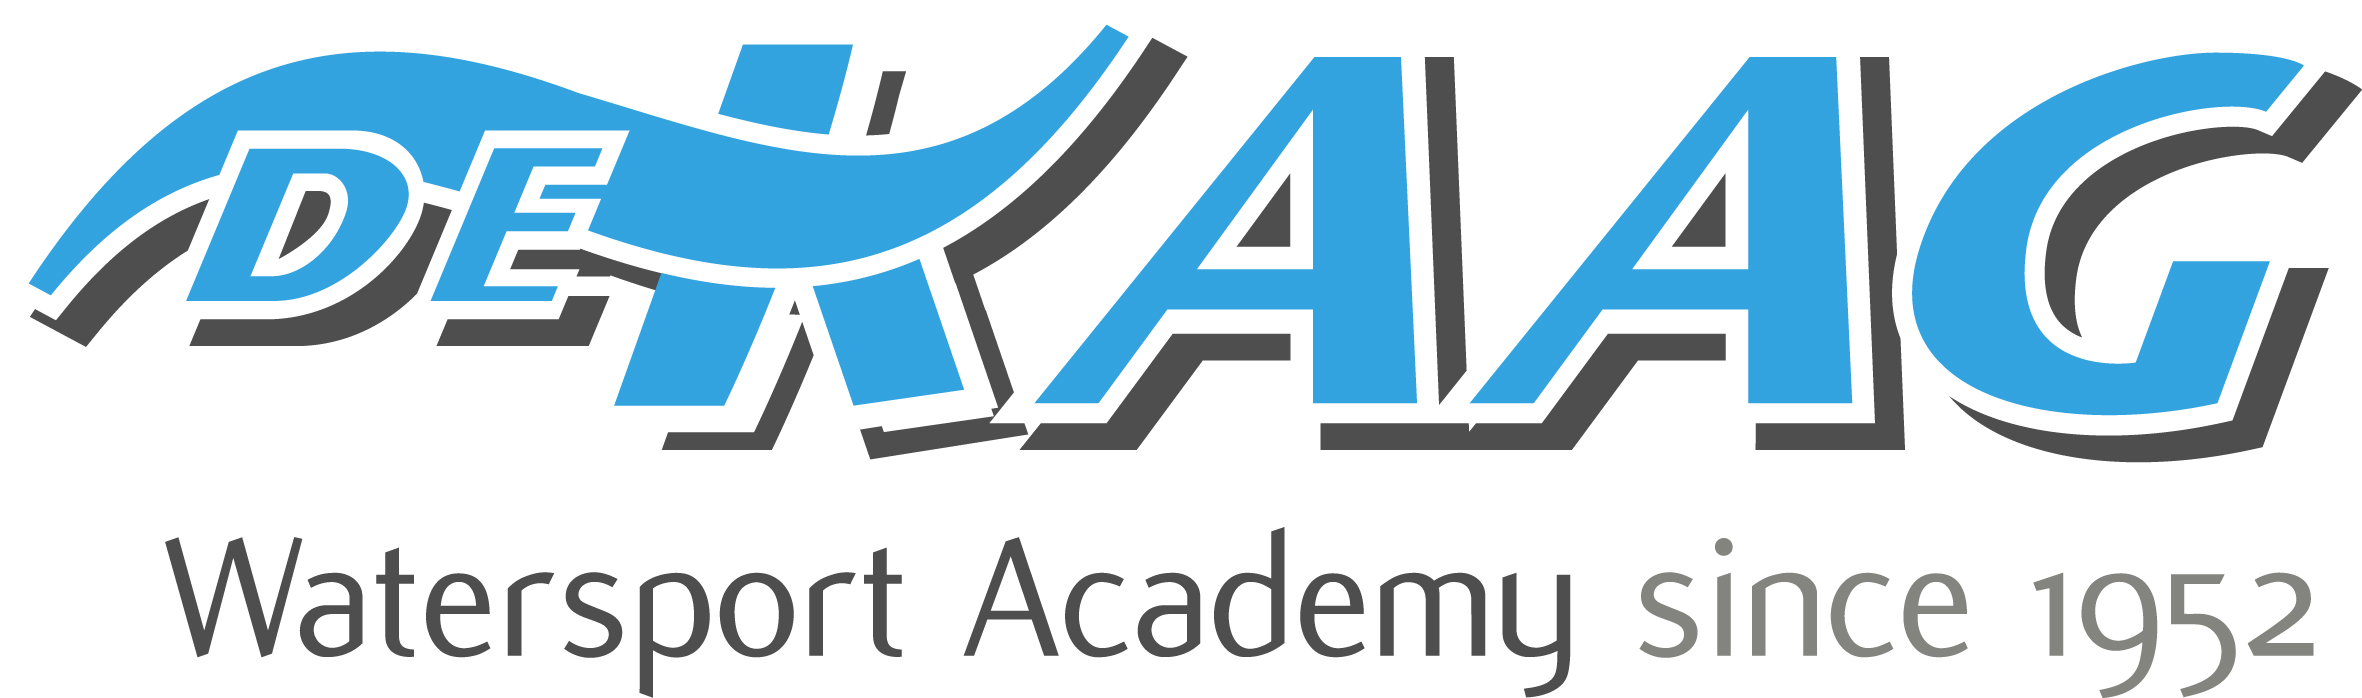 De Kaag Watersport Academy